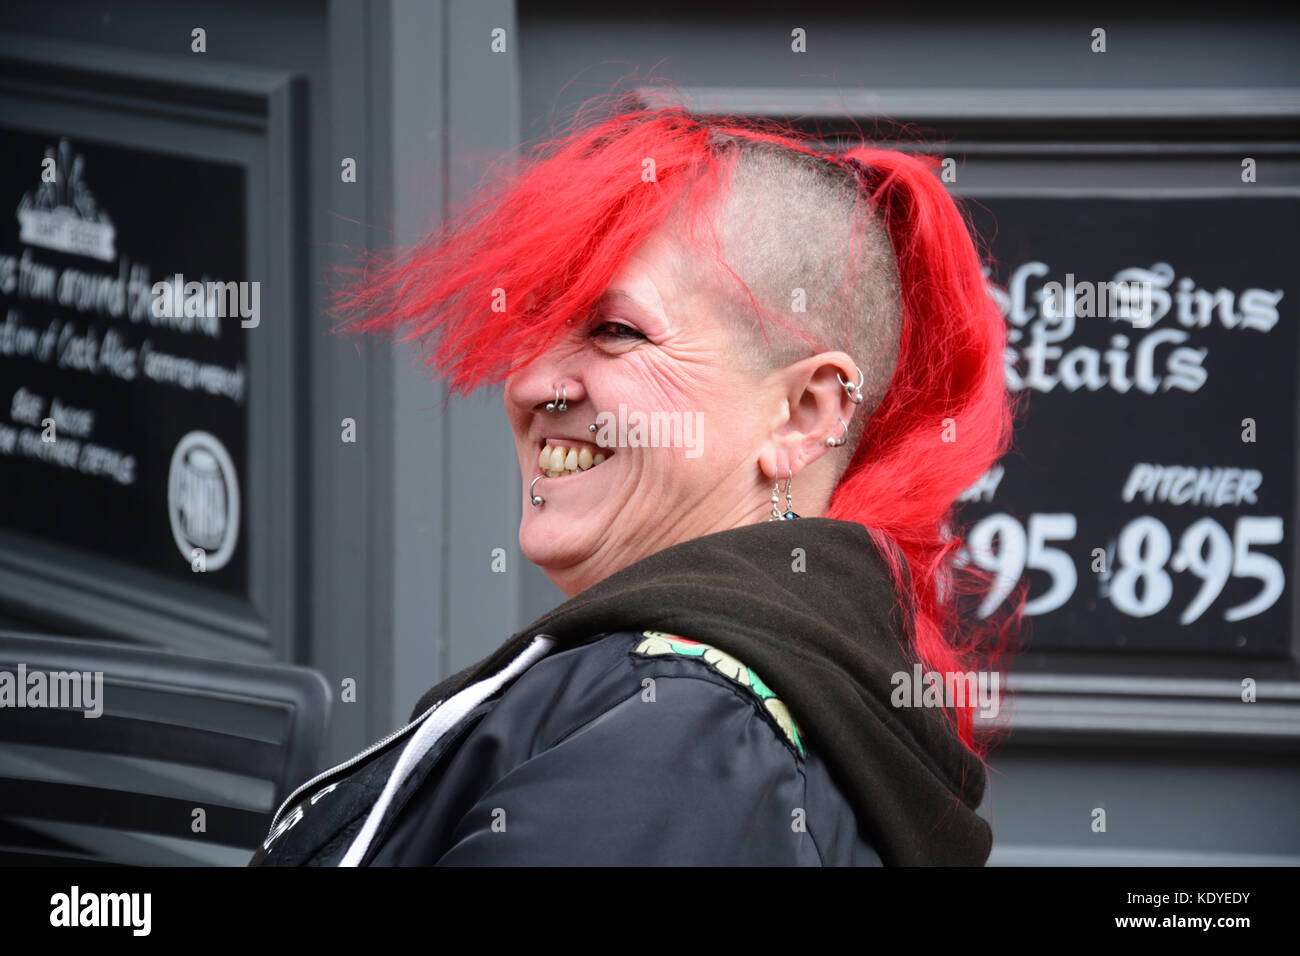 Frau mit roten Haaren & Piercings. Stockfoto